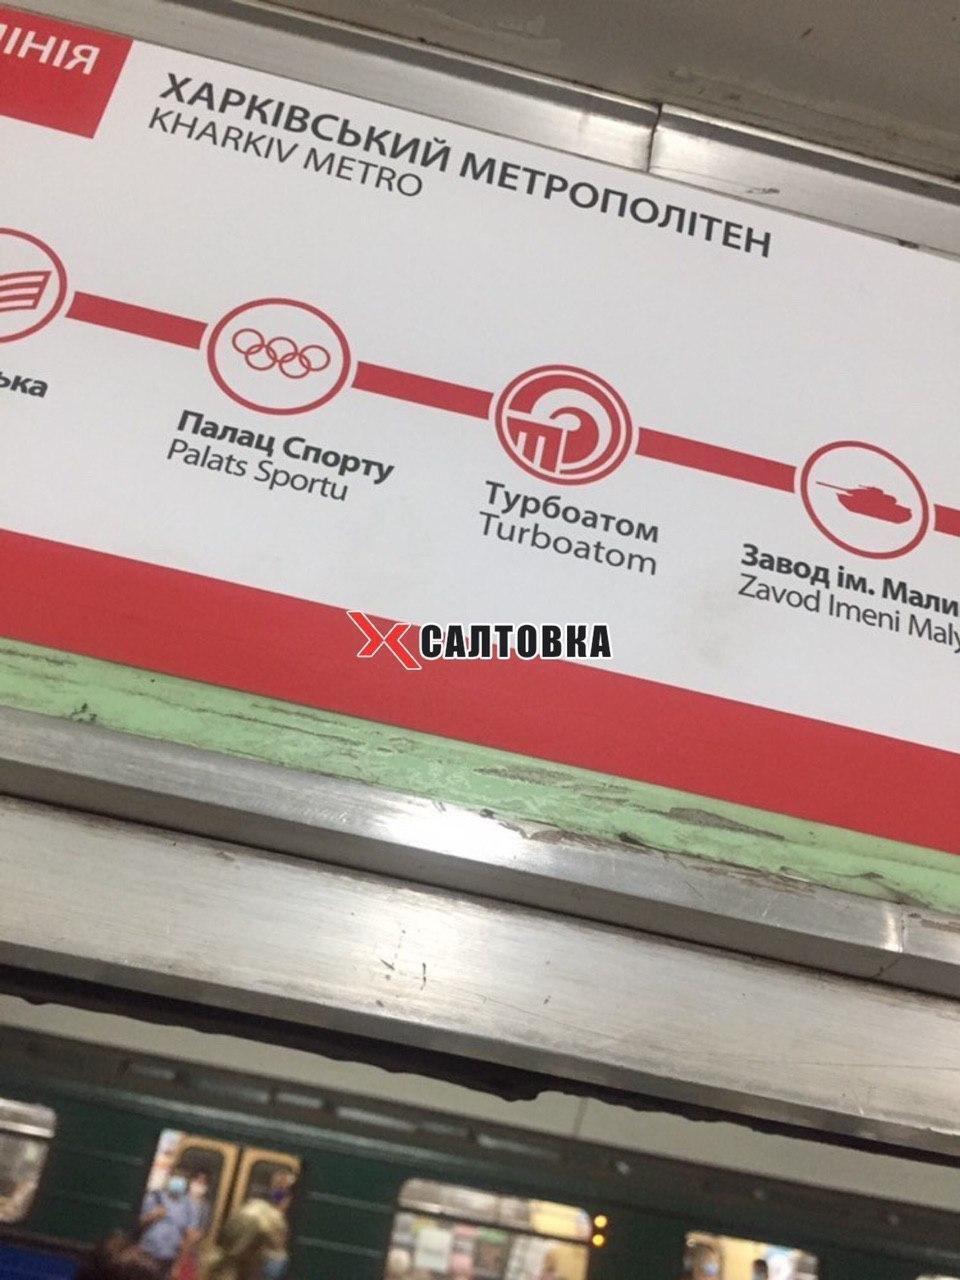 У Харкові перейменували станцію метро "Московський проспект": як тепер називається